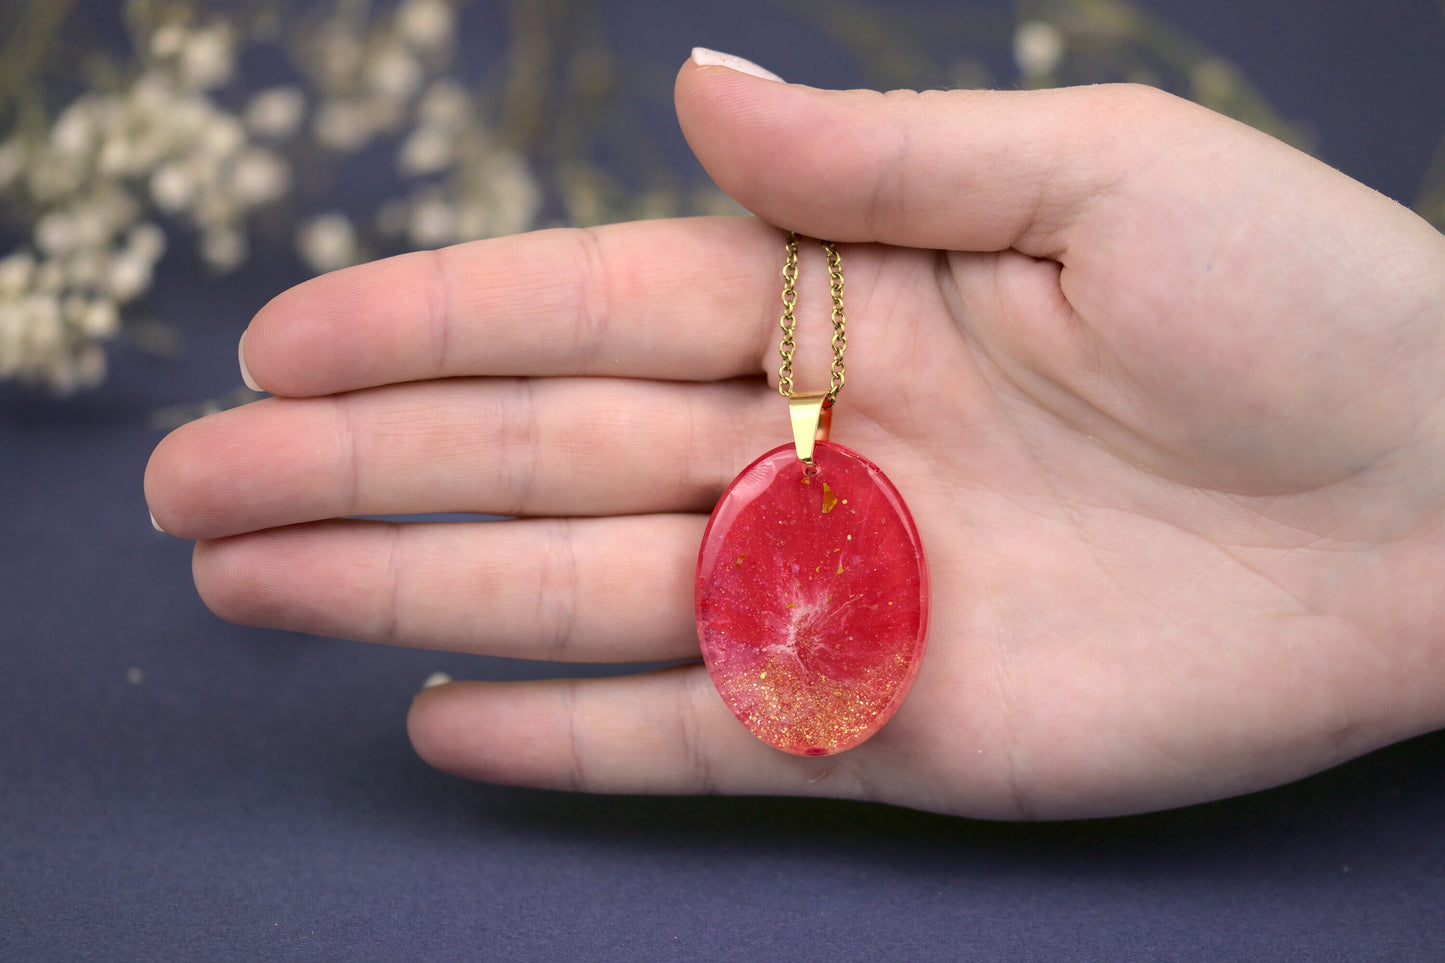 Colier Mare - Oval - Inox - Rosu cu Auriu - Handmade (Colecția Universe of Celestia)